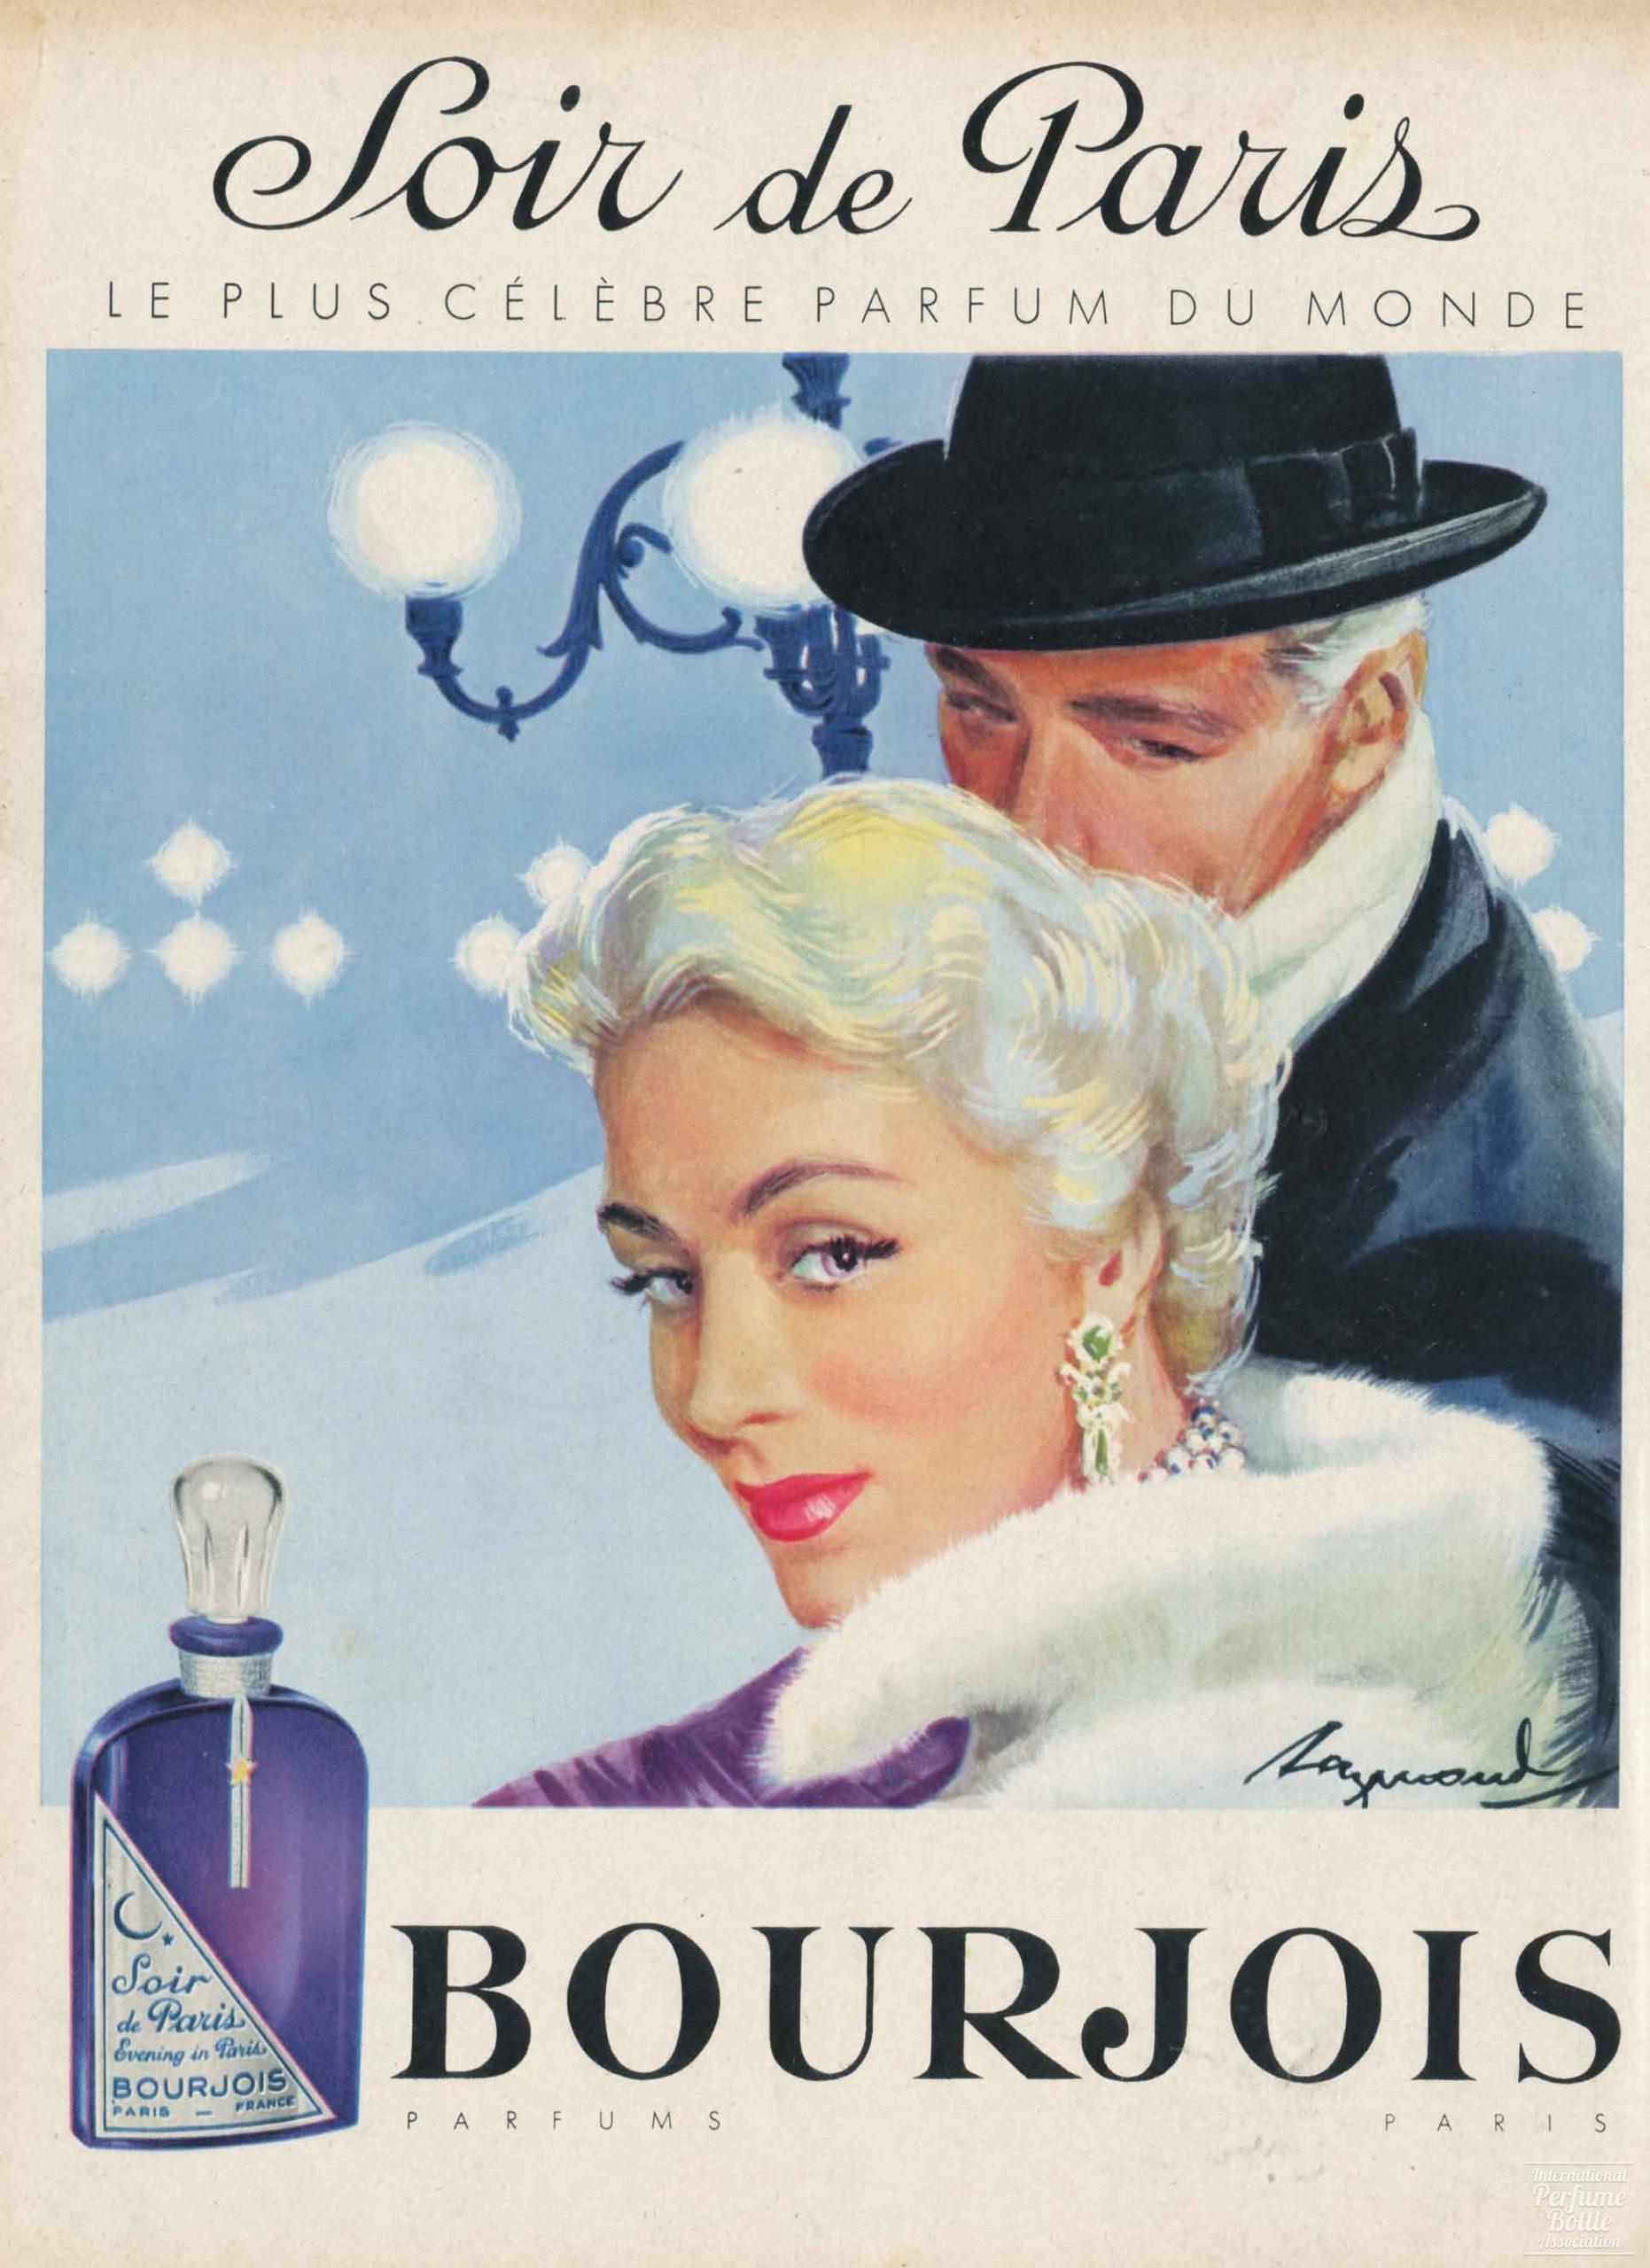 "Soir de Paris" by Bourjois Advertisement - 1956